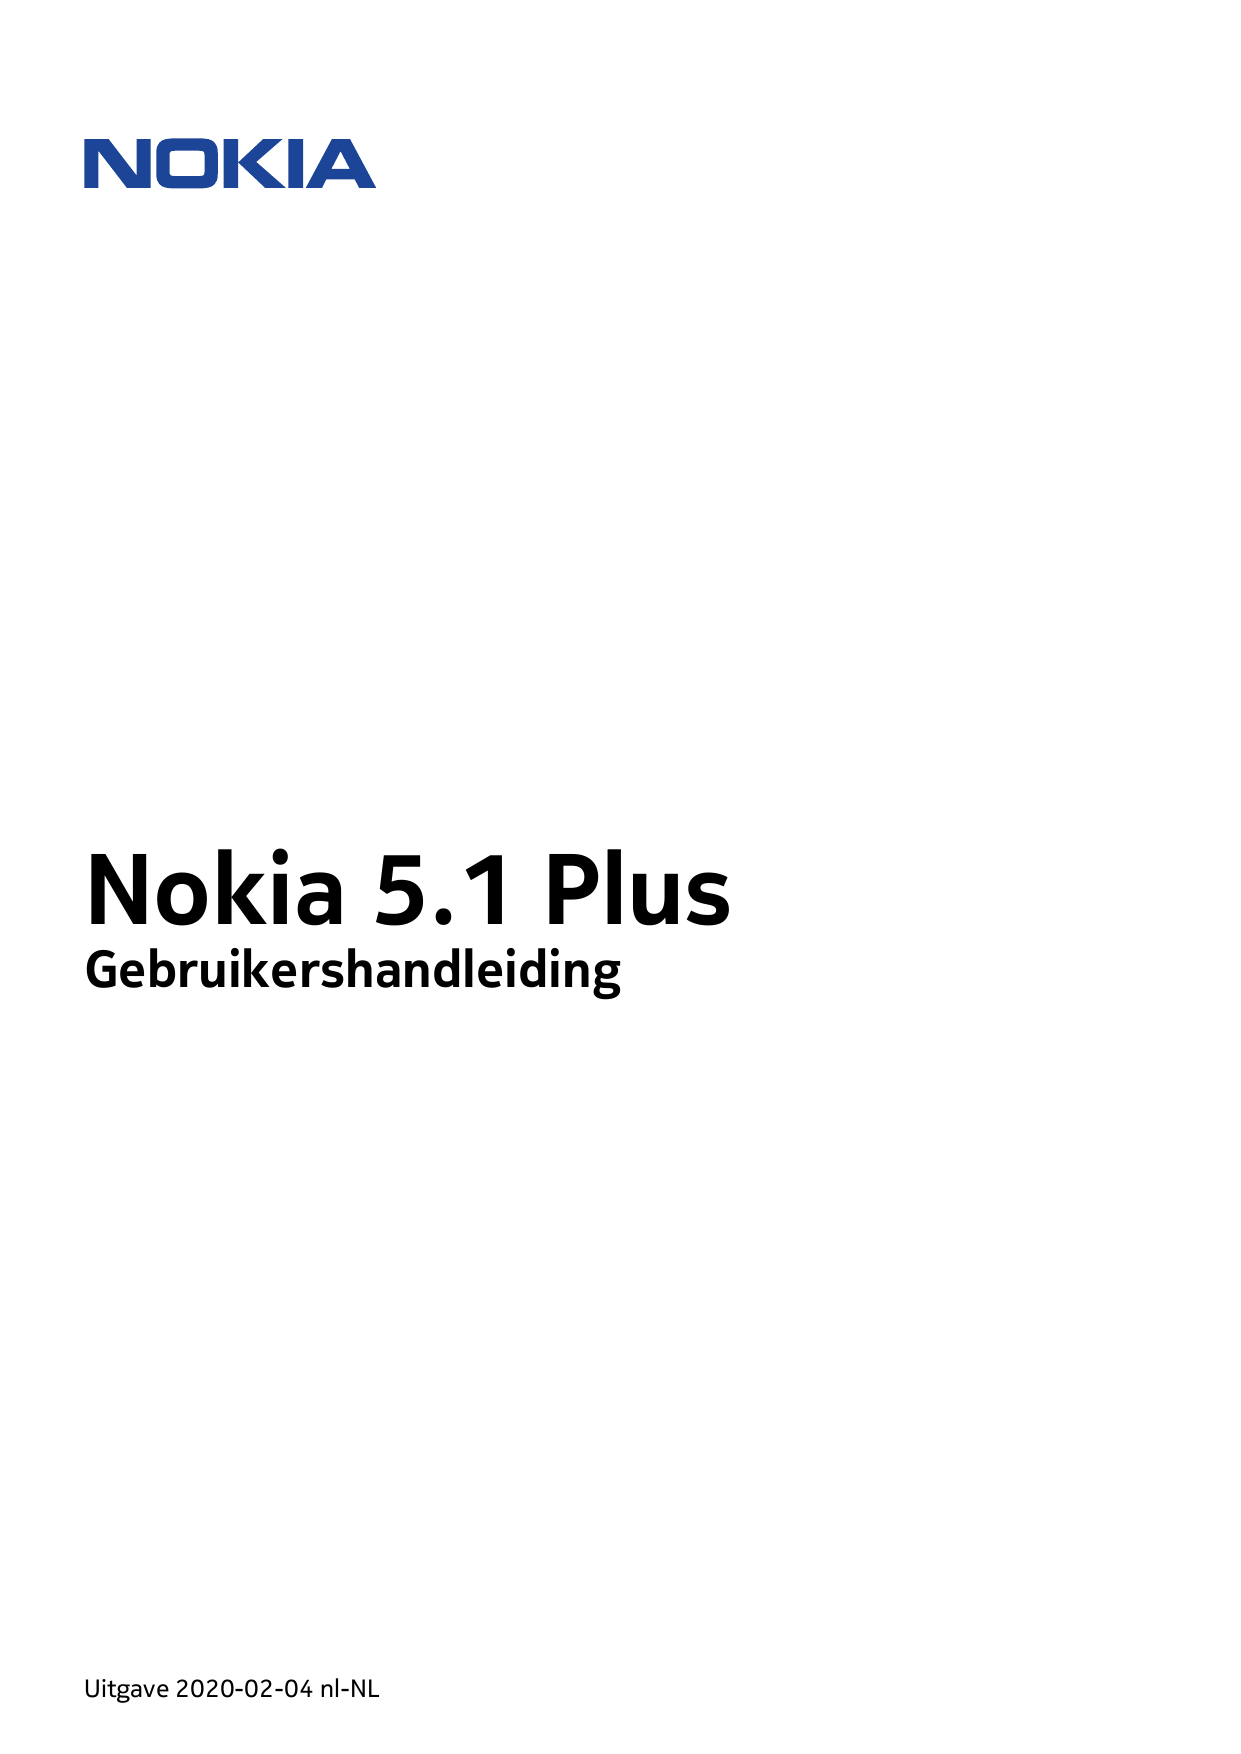 Nokia 5.1 PlusGebruikershandleidingUitgave 2020-02-04 nl-NL